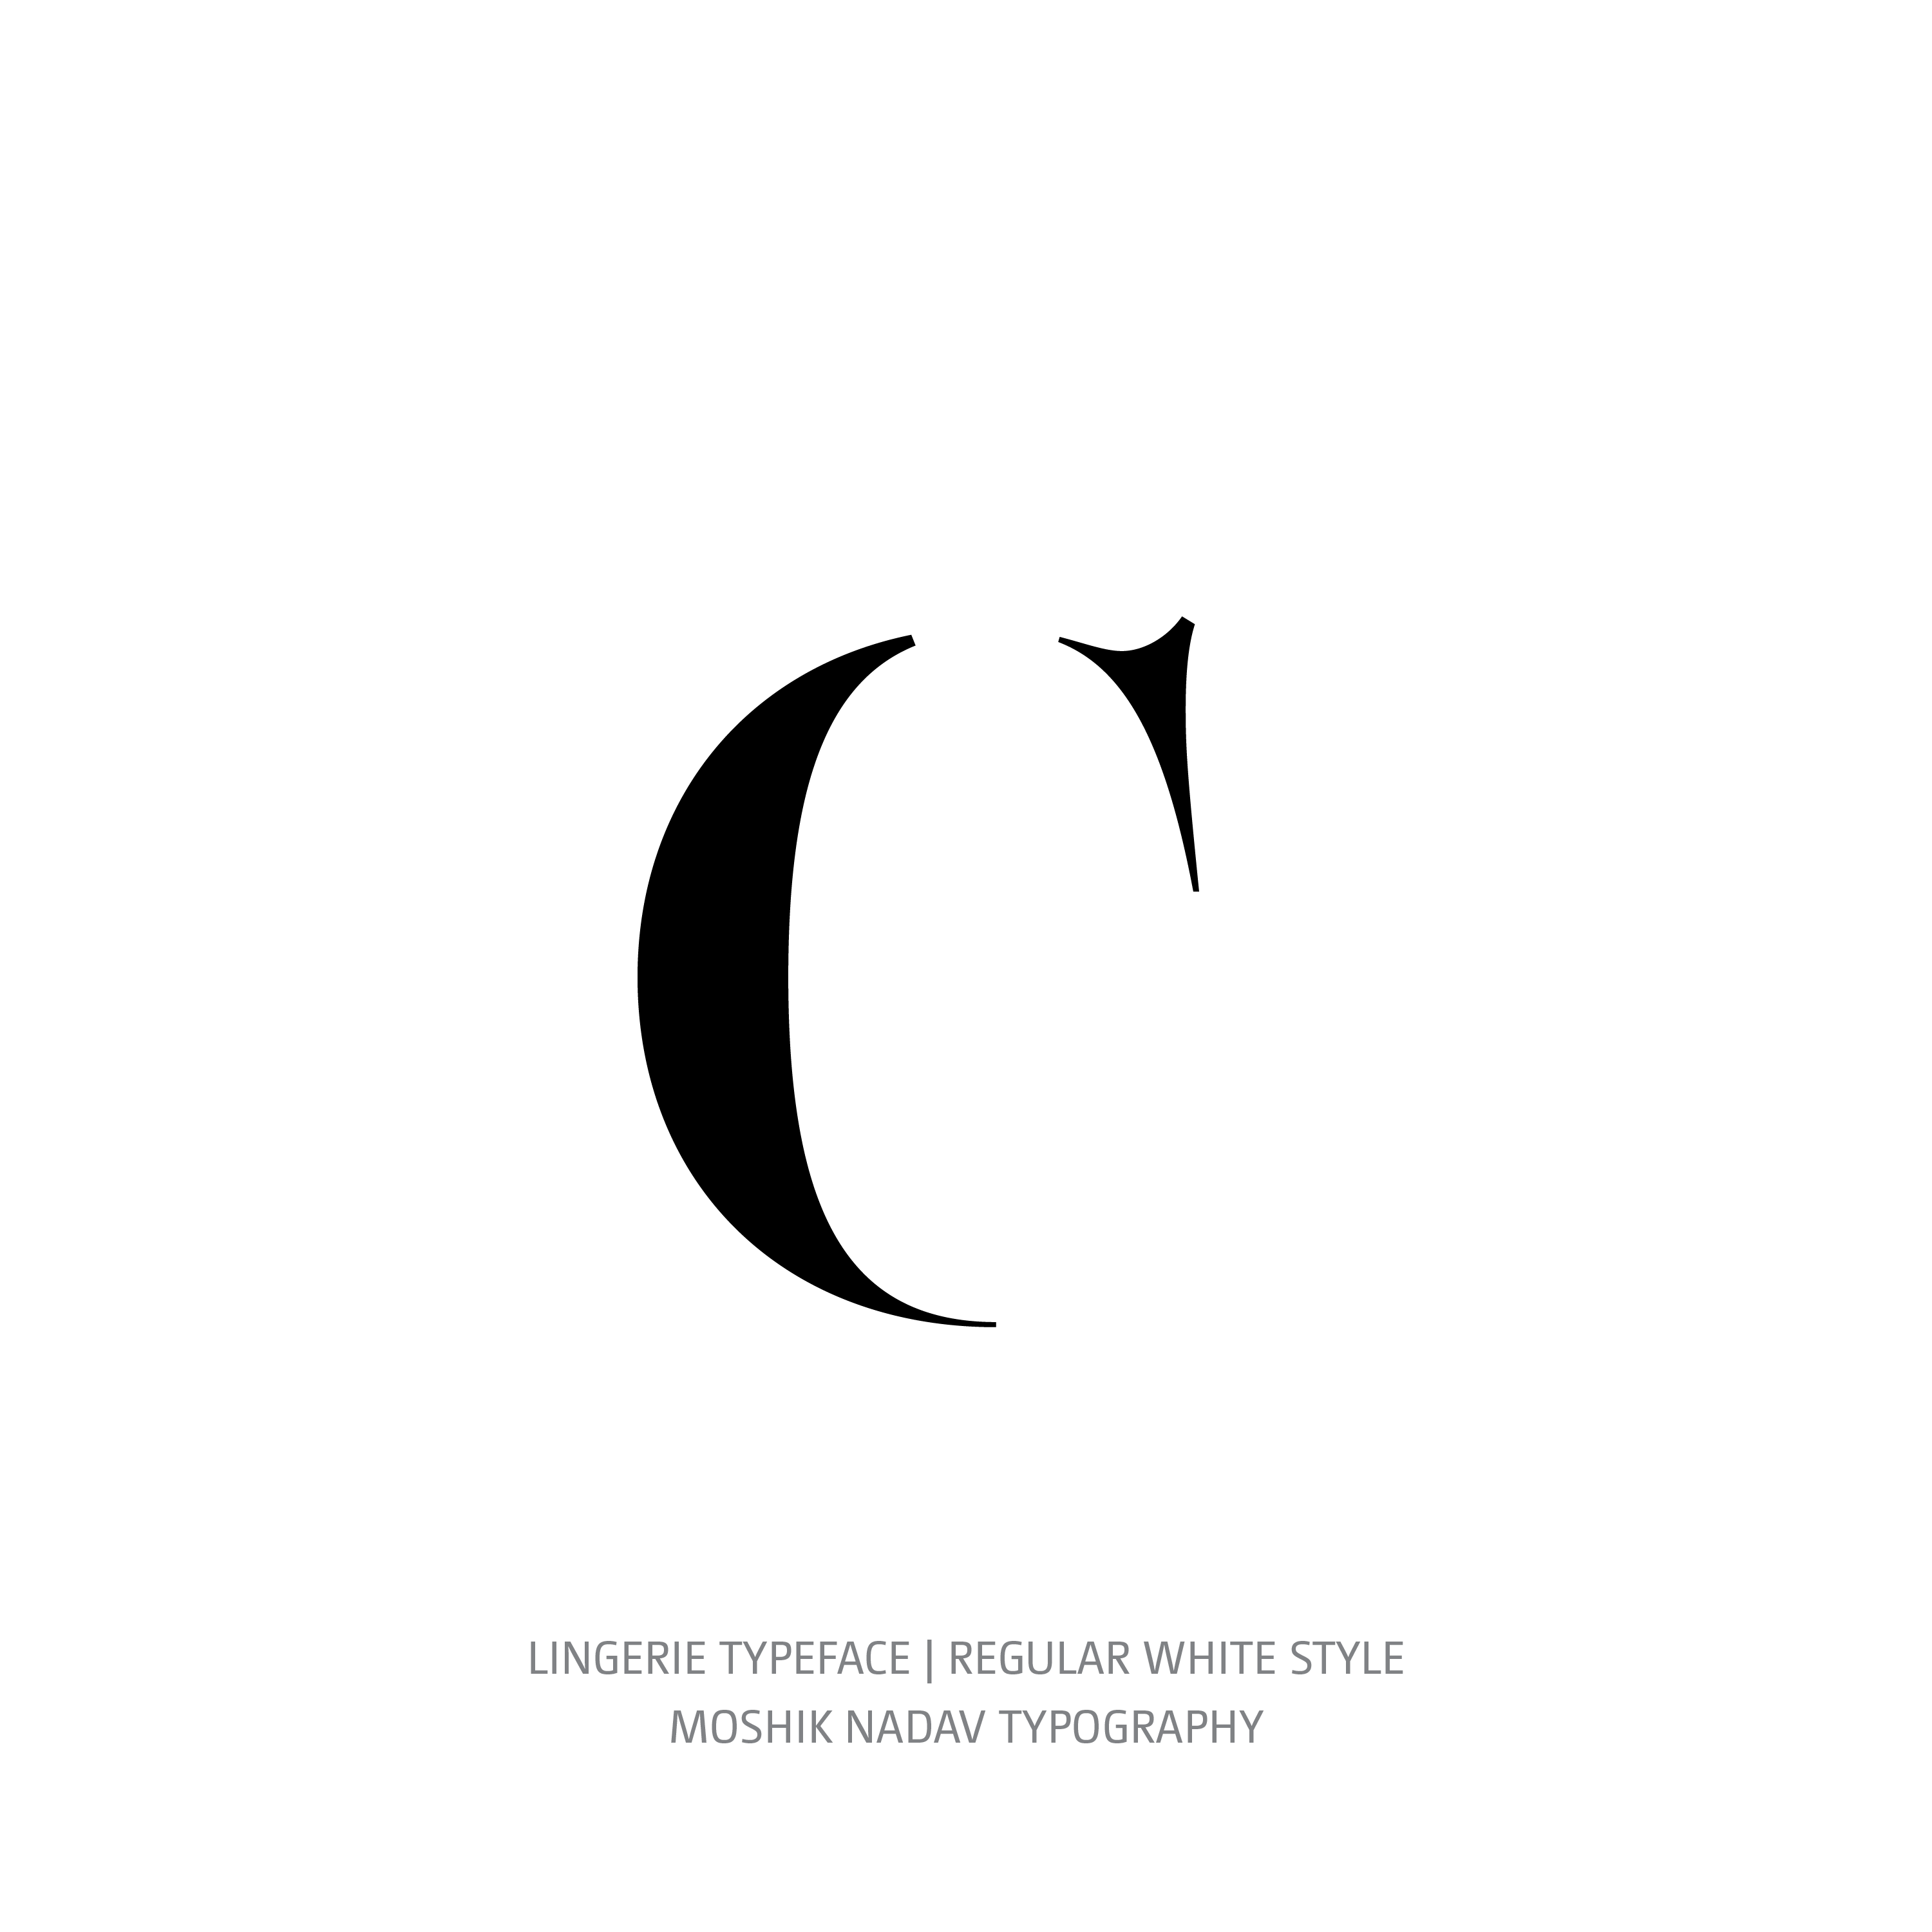 Lingerie Typeface Regular White c